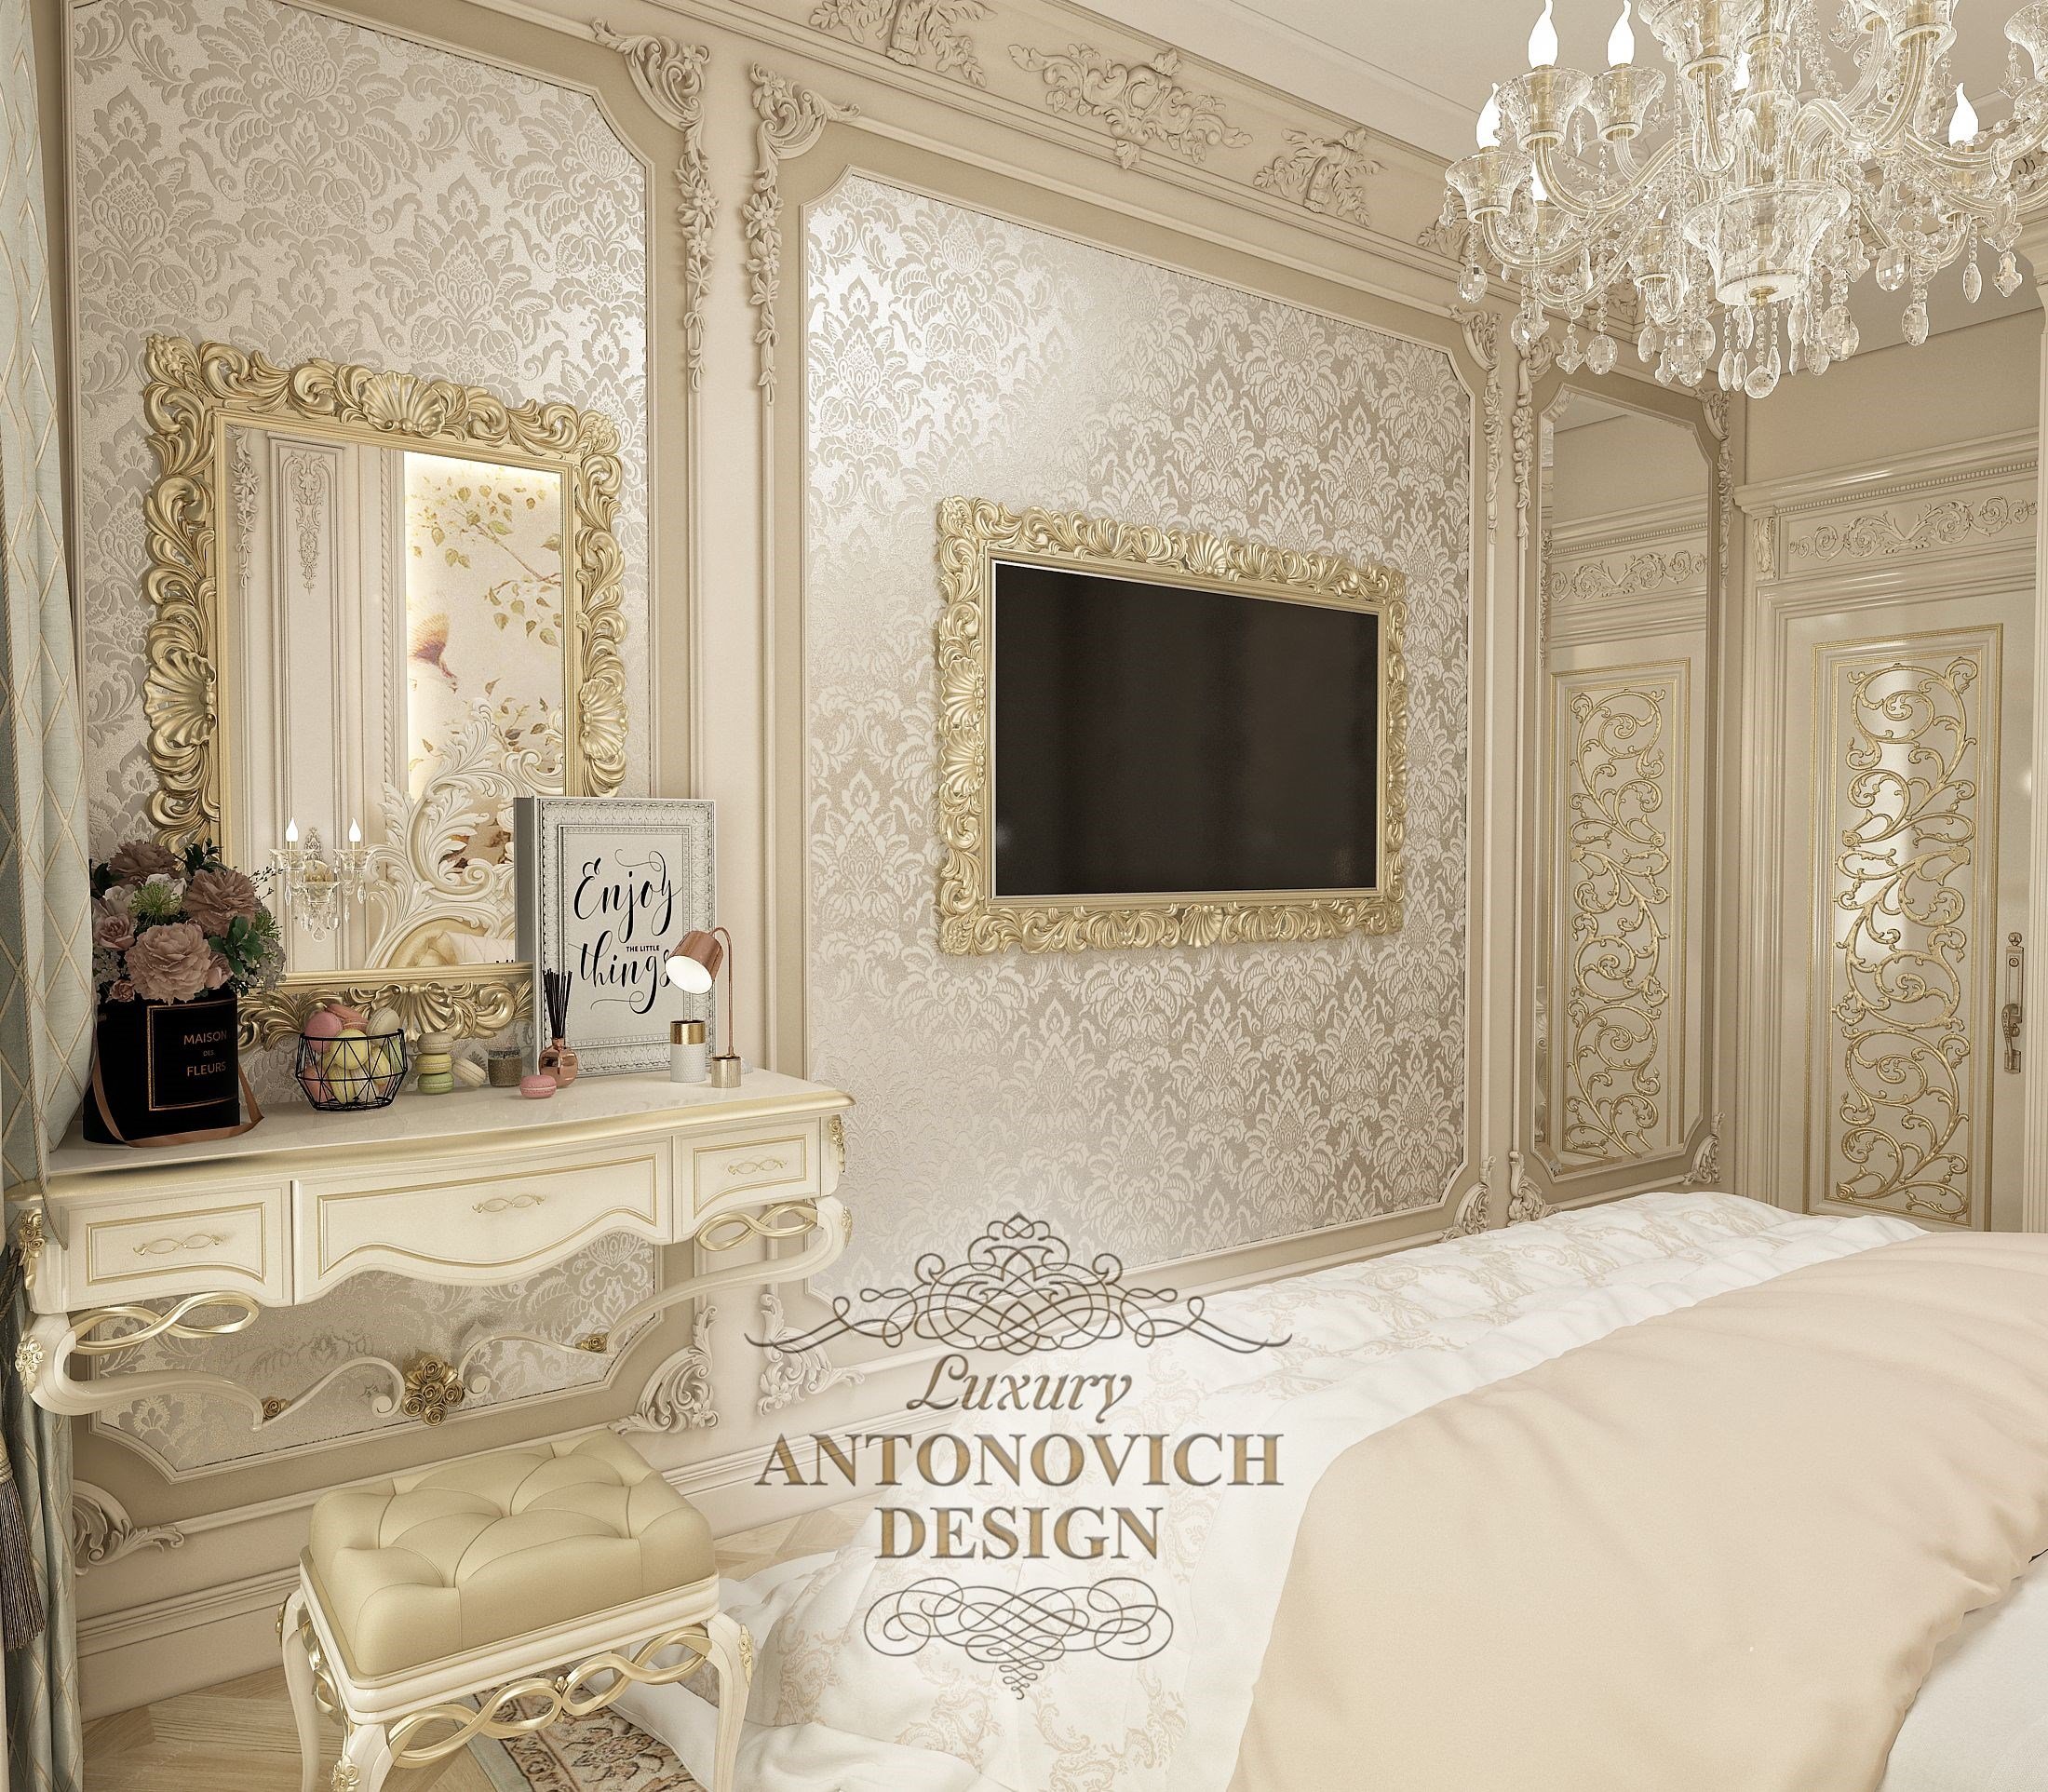 غرفة نوم رقم 1 من الشقة في مجمع سكني dynasty موسكو تصميم أنتونوفيتش الفاخر